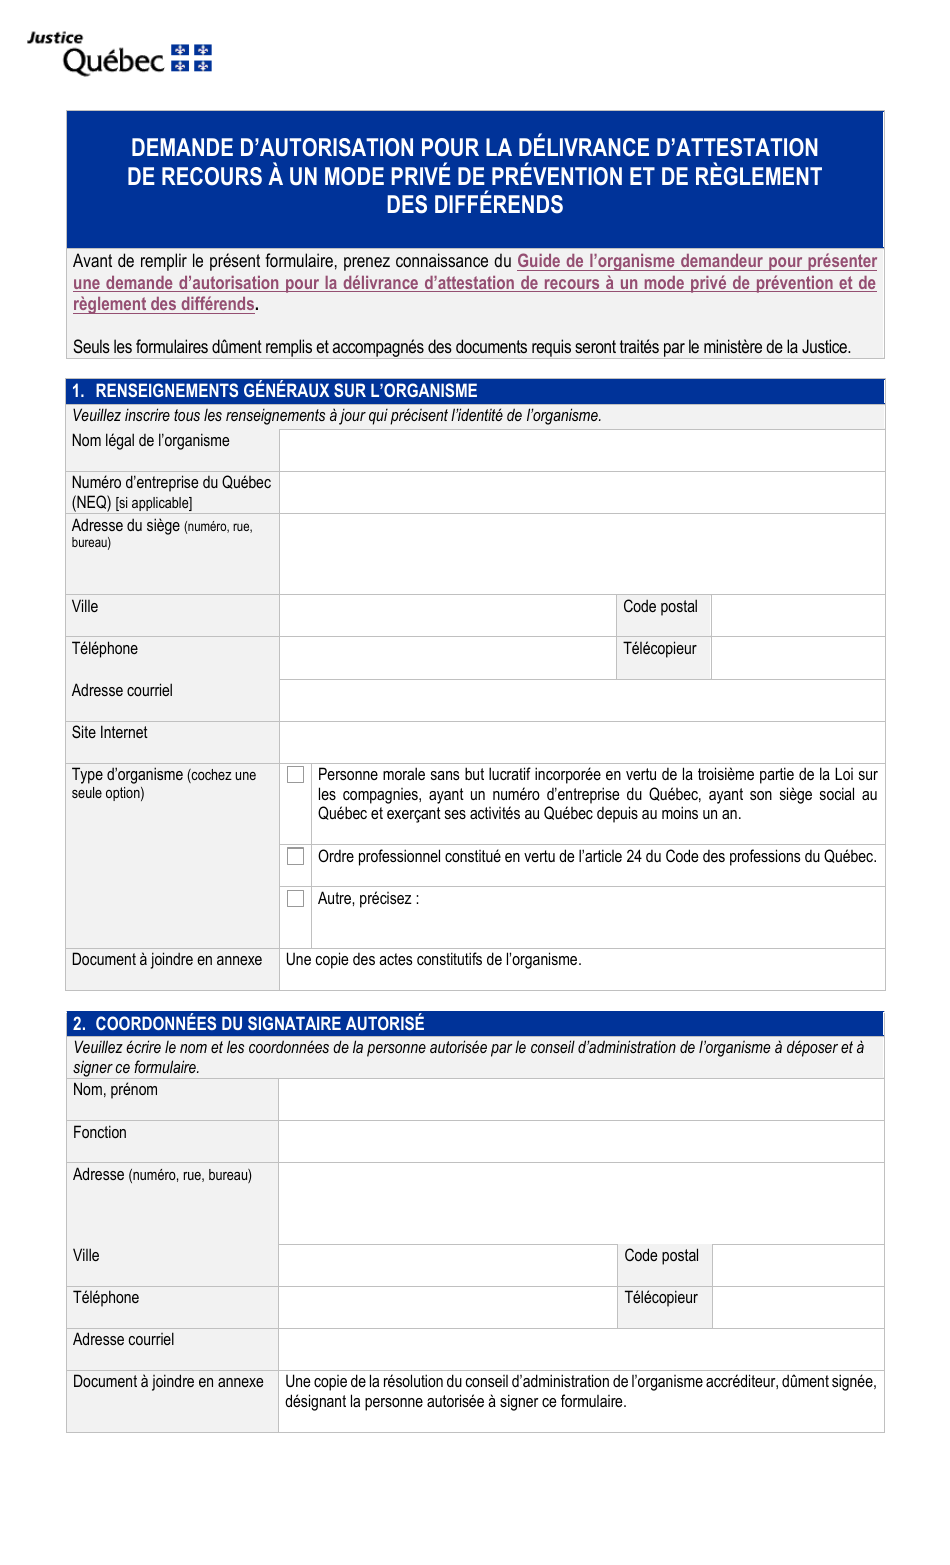 Demande Dautorisation Pour La Delivrance Dattestation De Recours a Un Mode Prive De Prevention Et De Reglement DES Differends - Quebec, Canada (French), Page 1